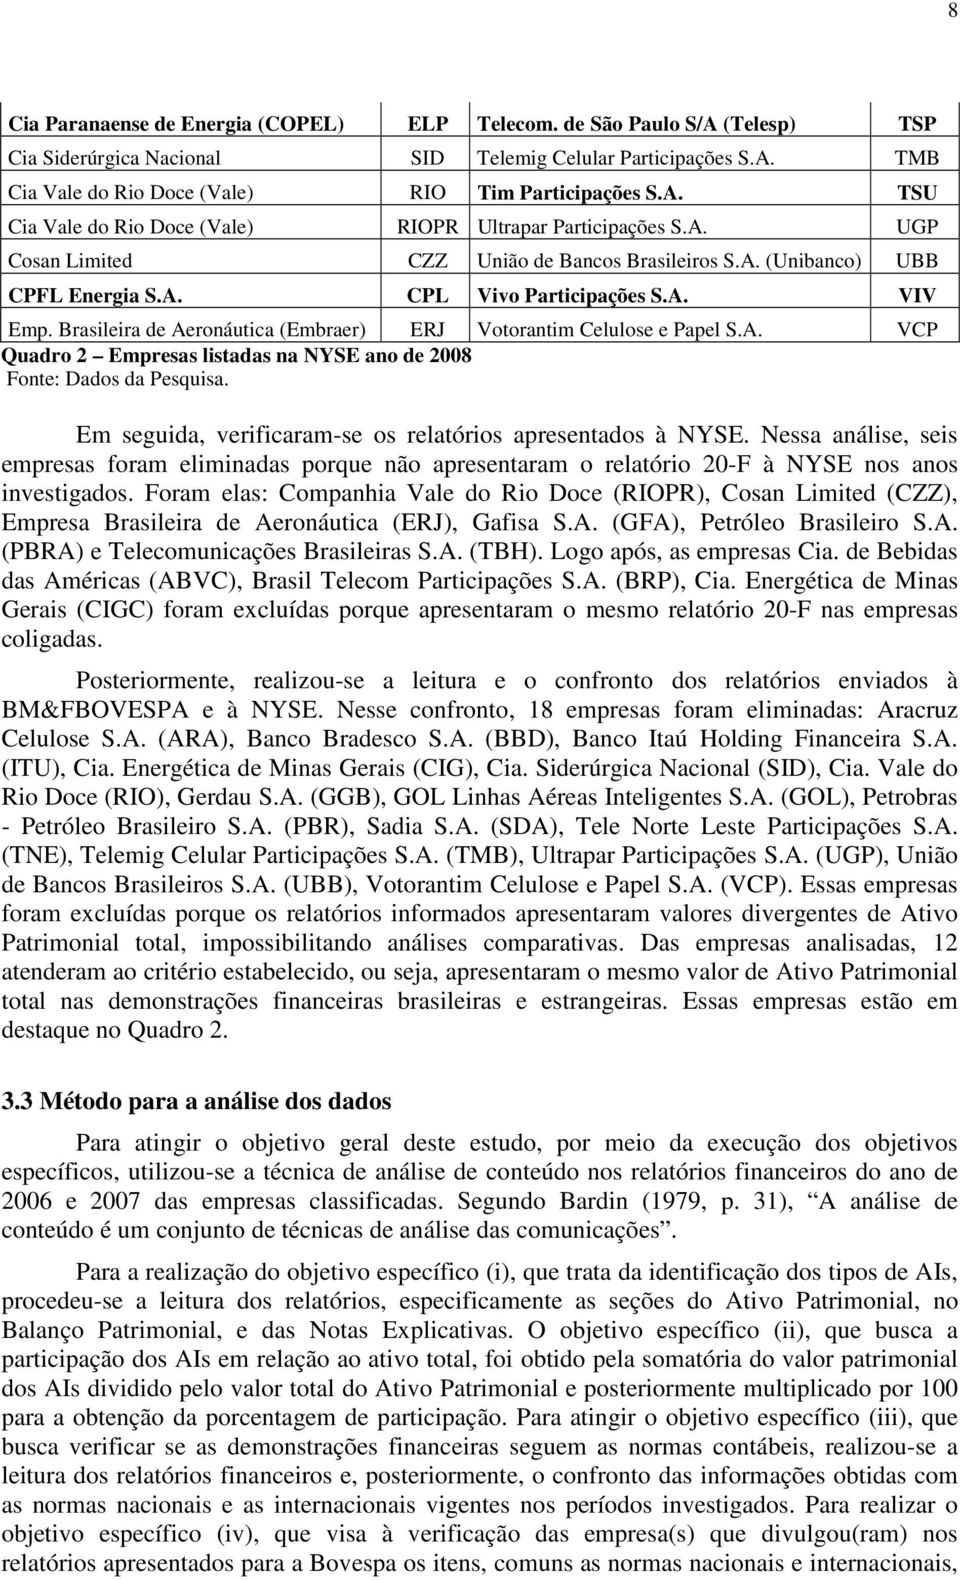 Brasileira de Aeronáutica (Embraer) ERJ Votorantim Celulose e Papel S.A. VCP Quadro 2 Empresas listadas na NYSE ano de 2008 Fonte: Dados da Pesquisa.